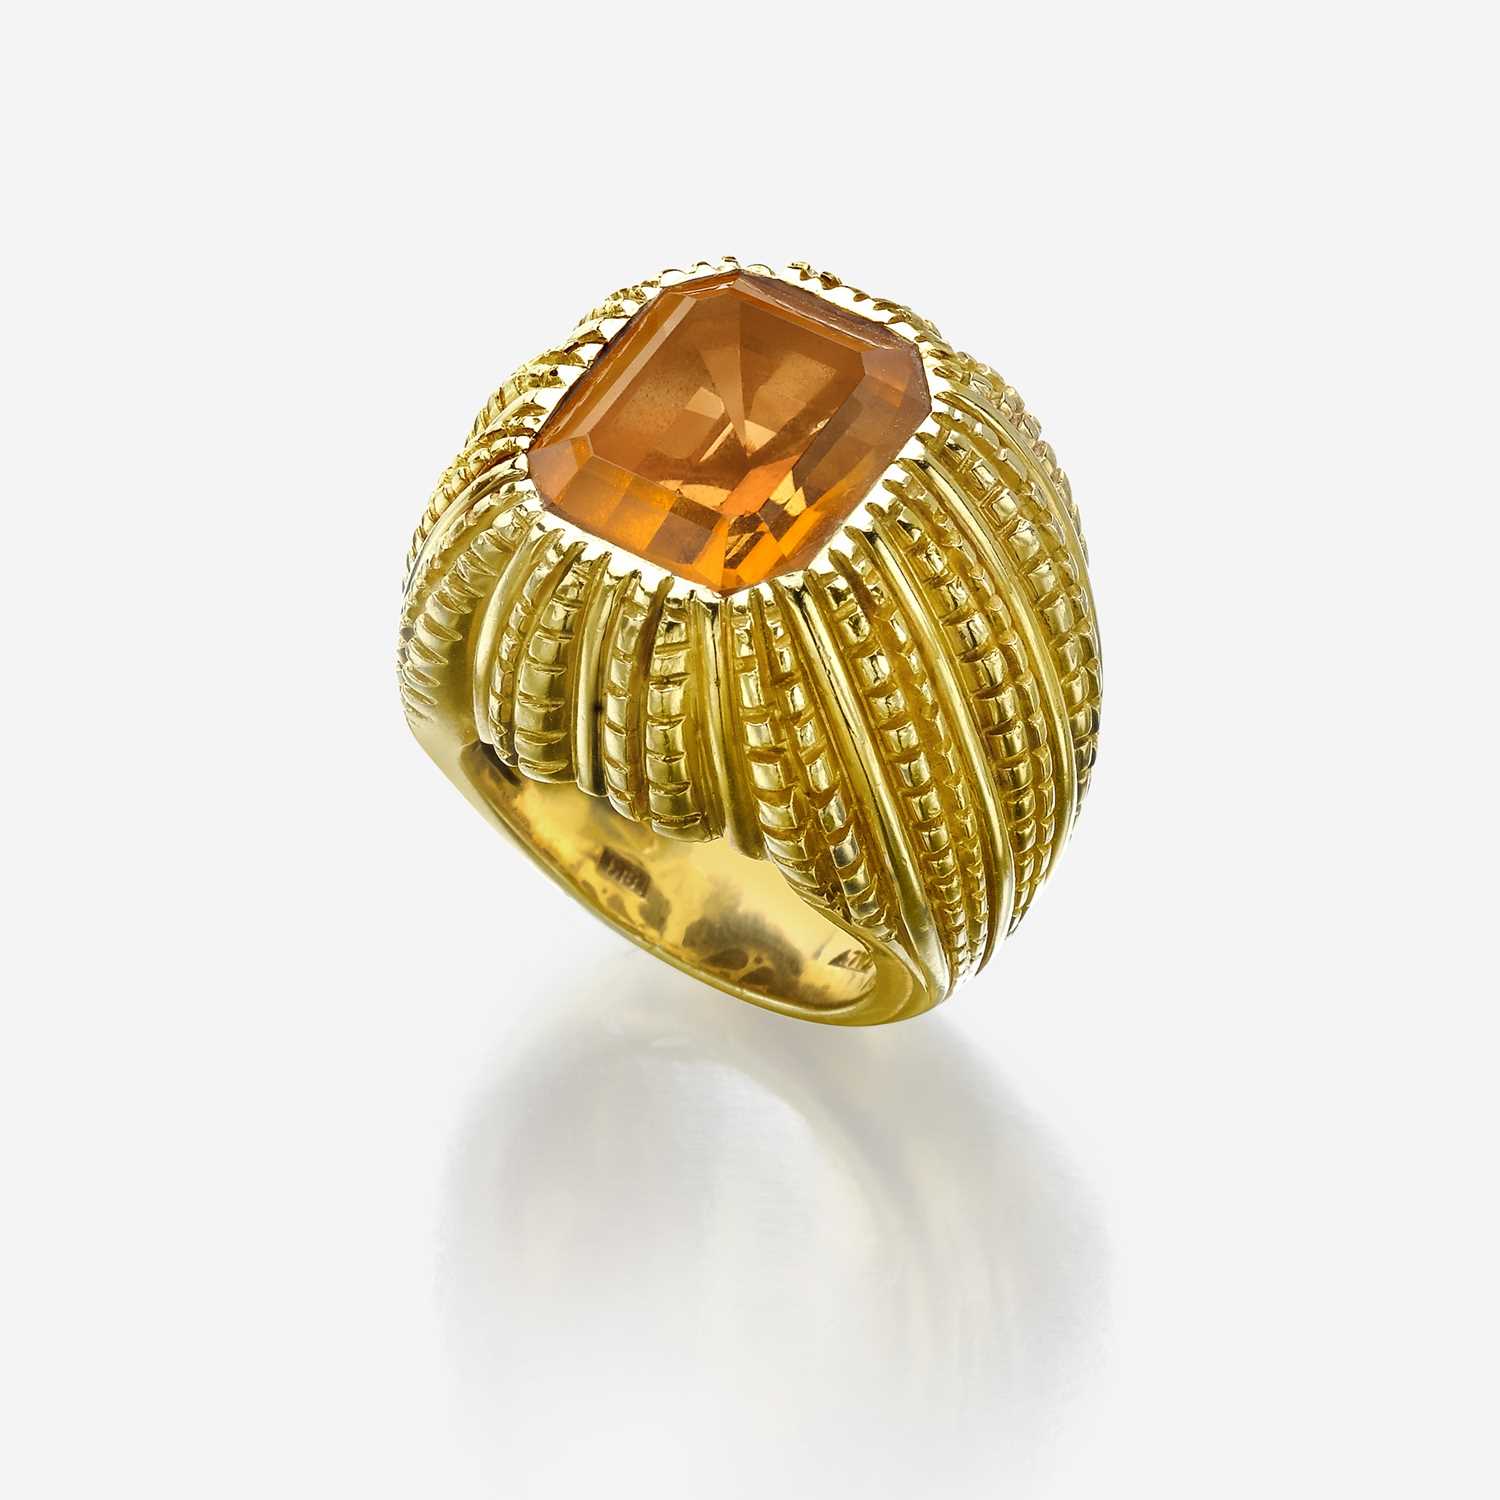 Lot 52 - An eighteen karat gold and citrine ring, Verdura